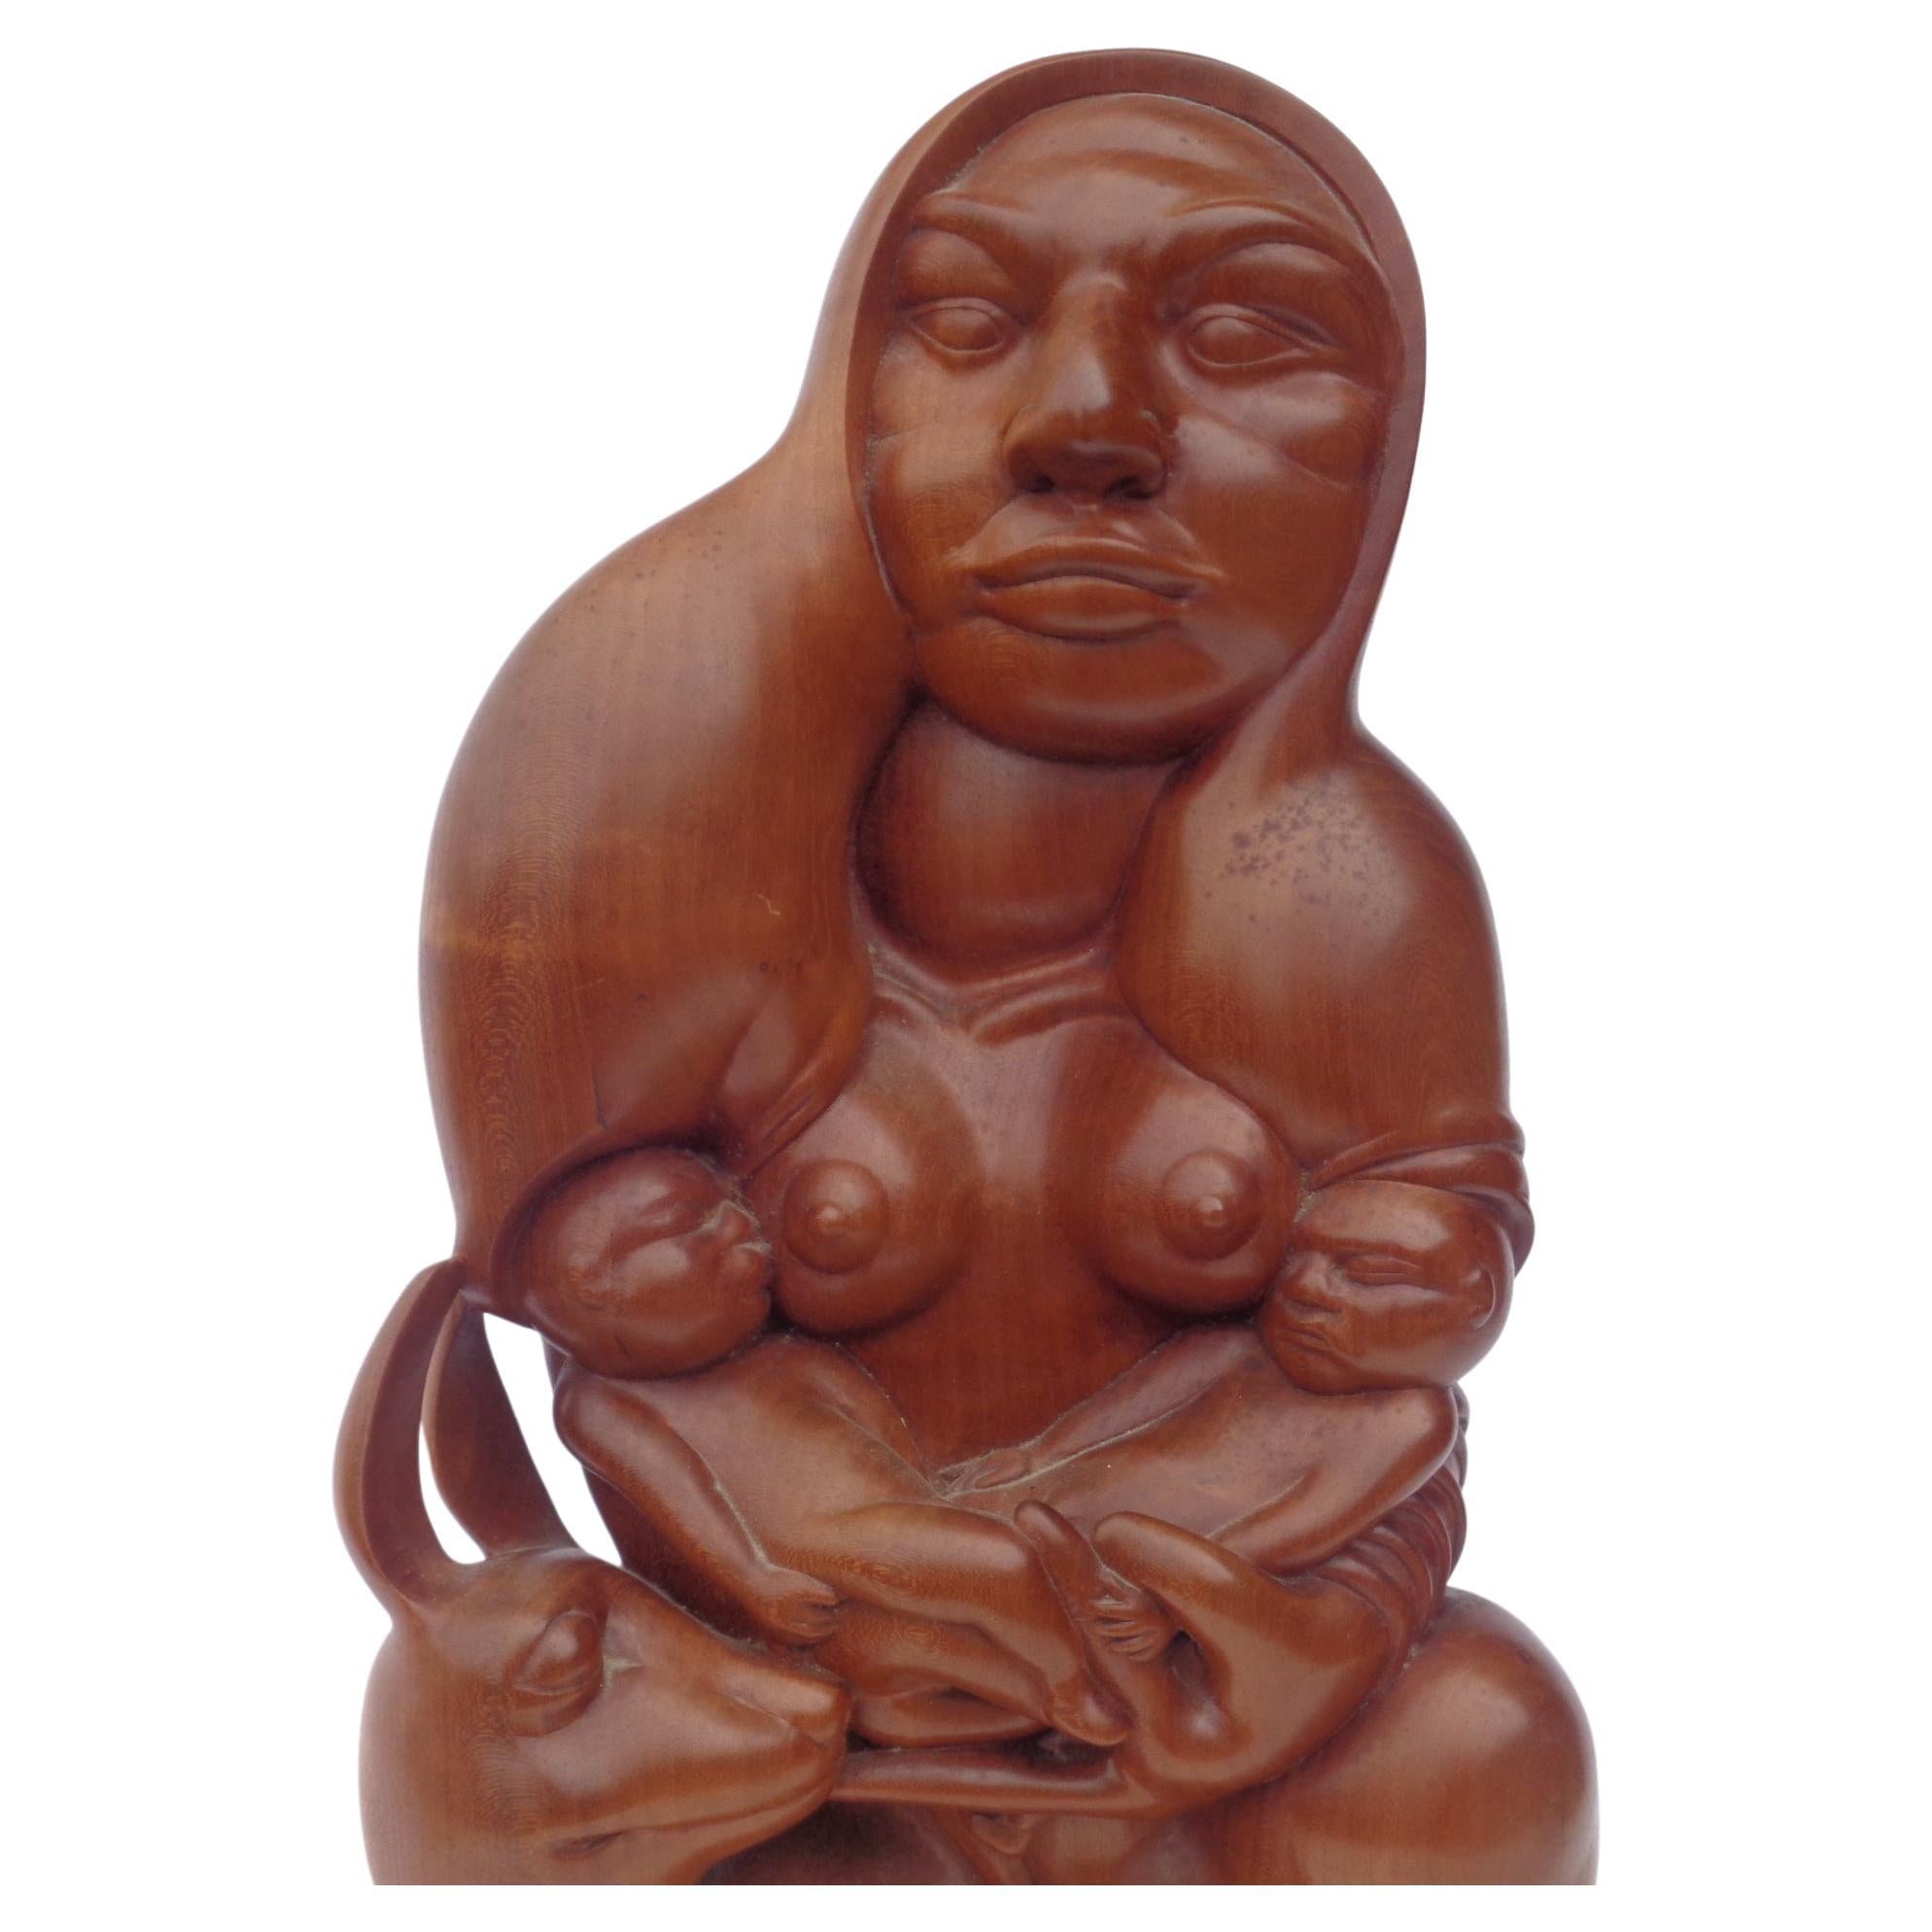 Außergewöhnlich feine handgeschnitzte Skulptur aus exotischem Hartholz. Eine Frau mit Lama oder Vikunja an ihrer Seite, die ihre beiden Kinder stillt, während sie sie in ihren Armen wiegt. Kühne, kraftvolle Bildsprache. Nach dem Vorbild von Diego